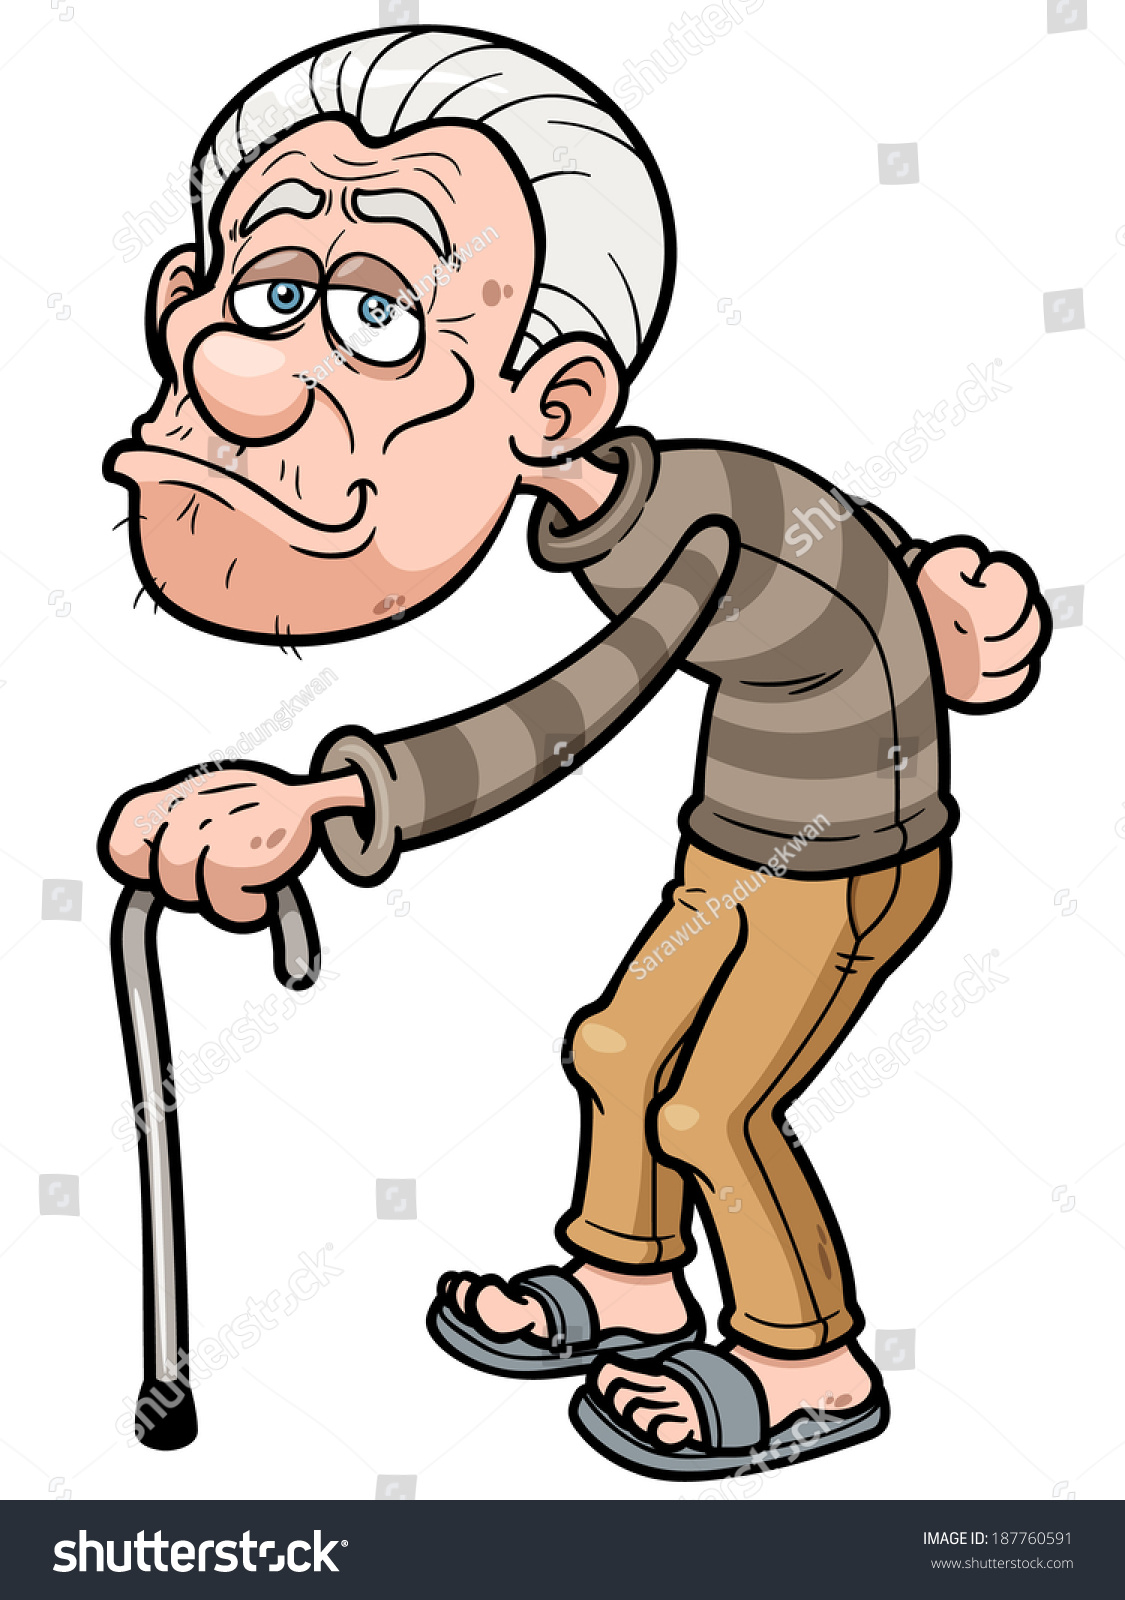 Vector Illustration Of Cartoon Old Man - 187760591 : Shutterstock